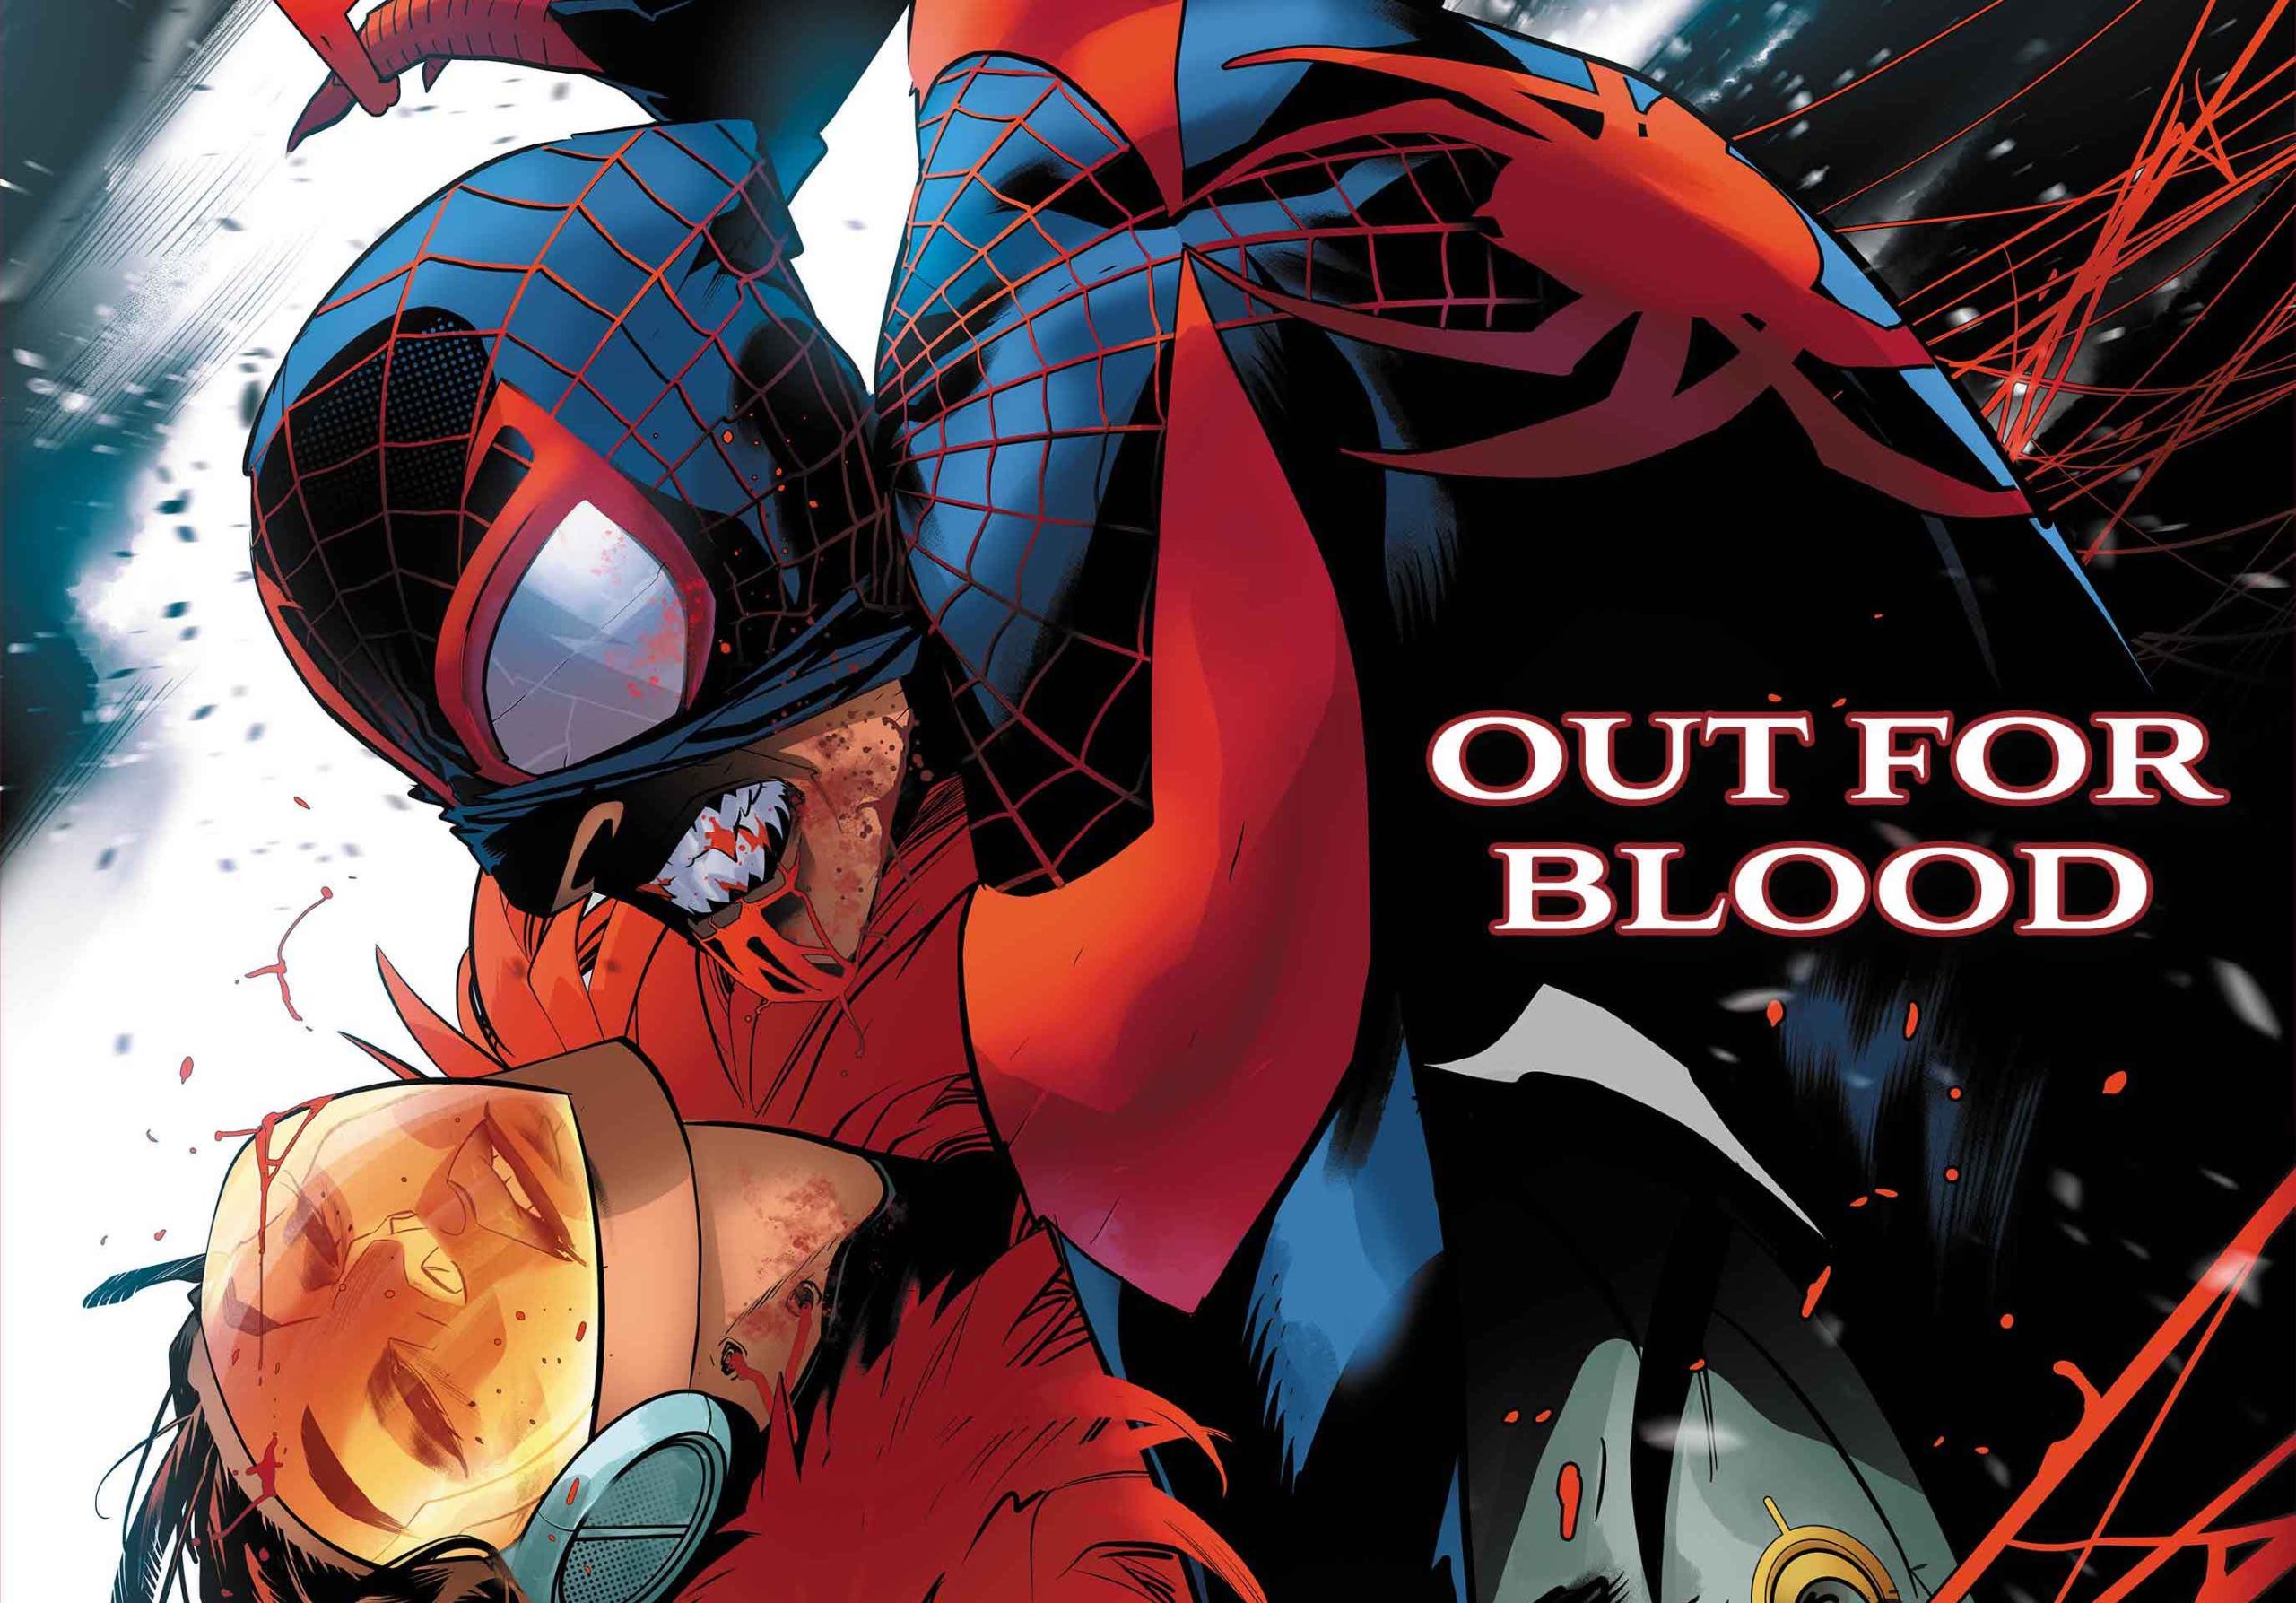 'Miles Morales' Spider-Man' #23 cover spoils ending of 'Blood Hunt' #2